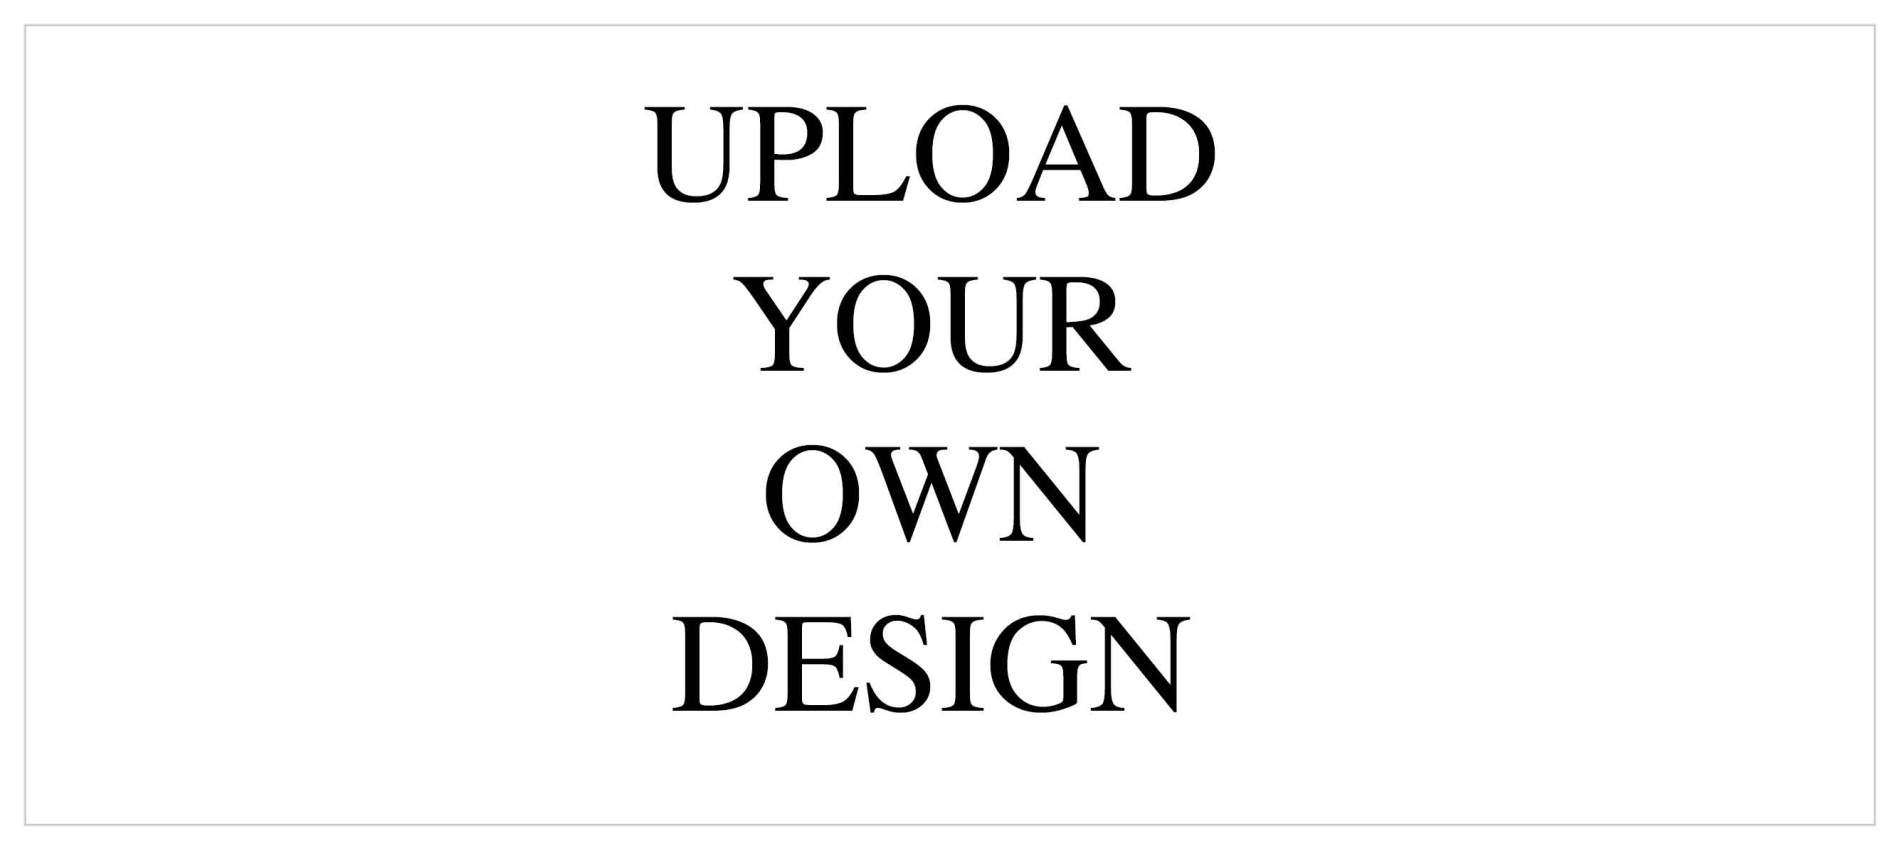 Upload Your Own Design 9.25"x4" Tea Landscape